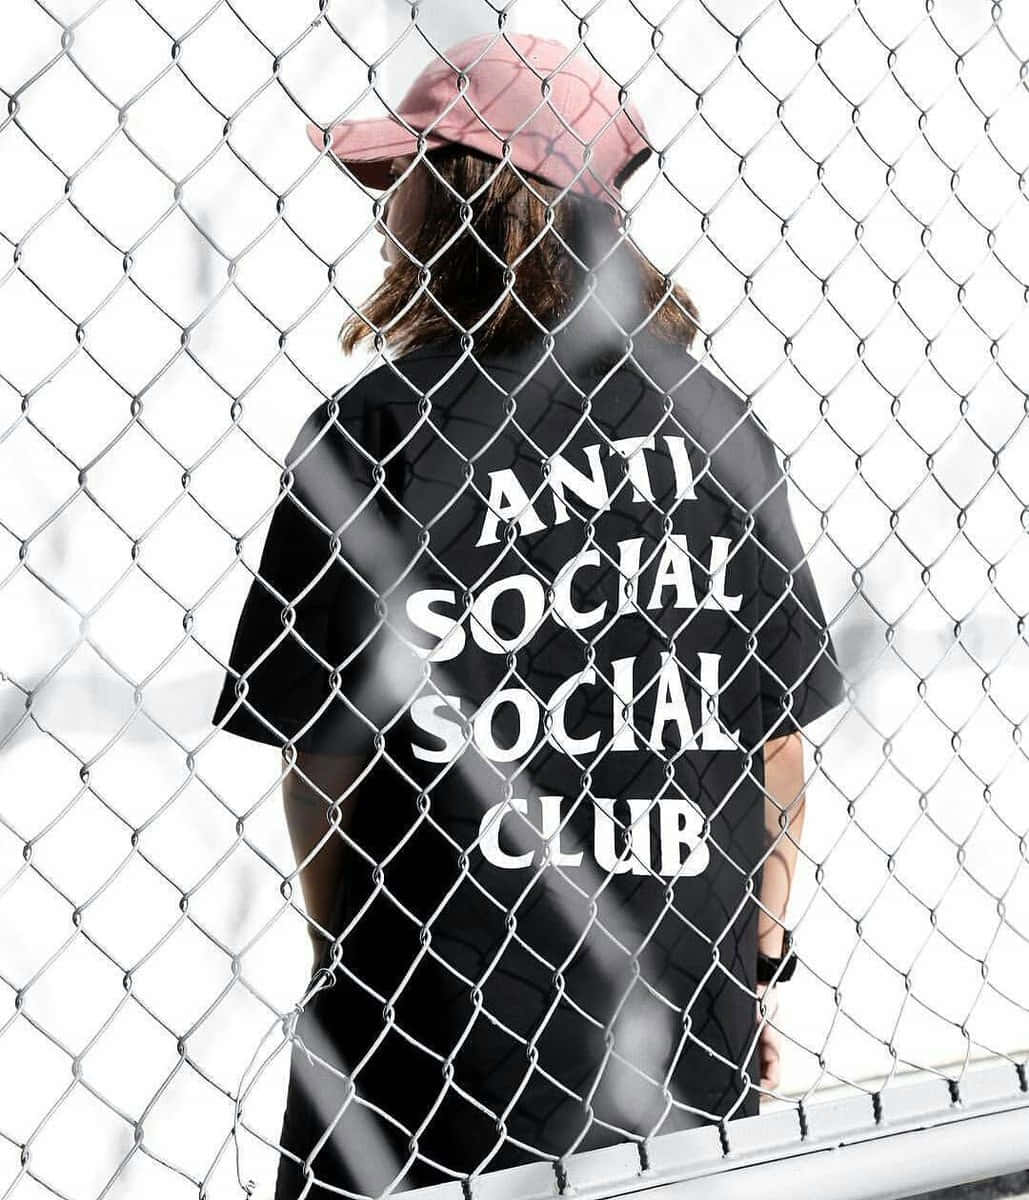 Caption: Vibrant Anti Social Club Iphone Wallpaper Wallpaper